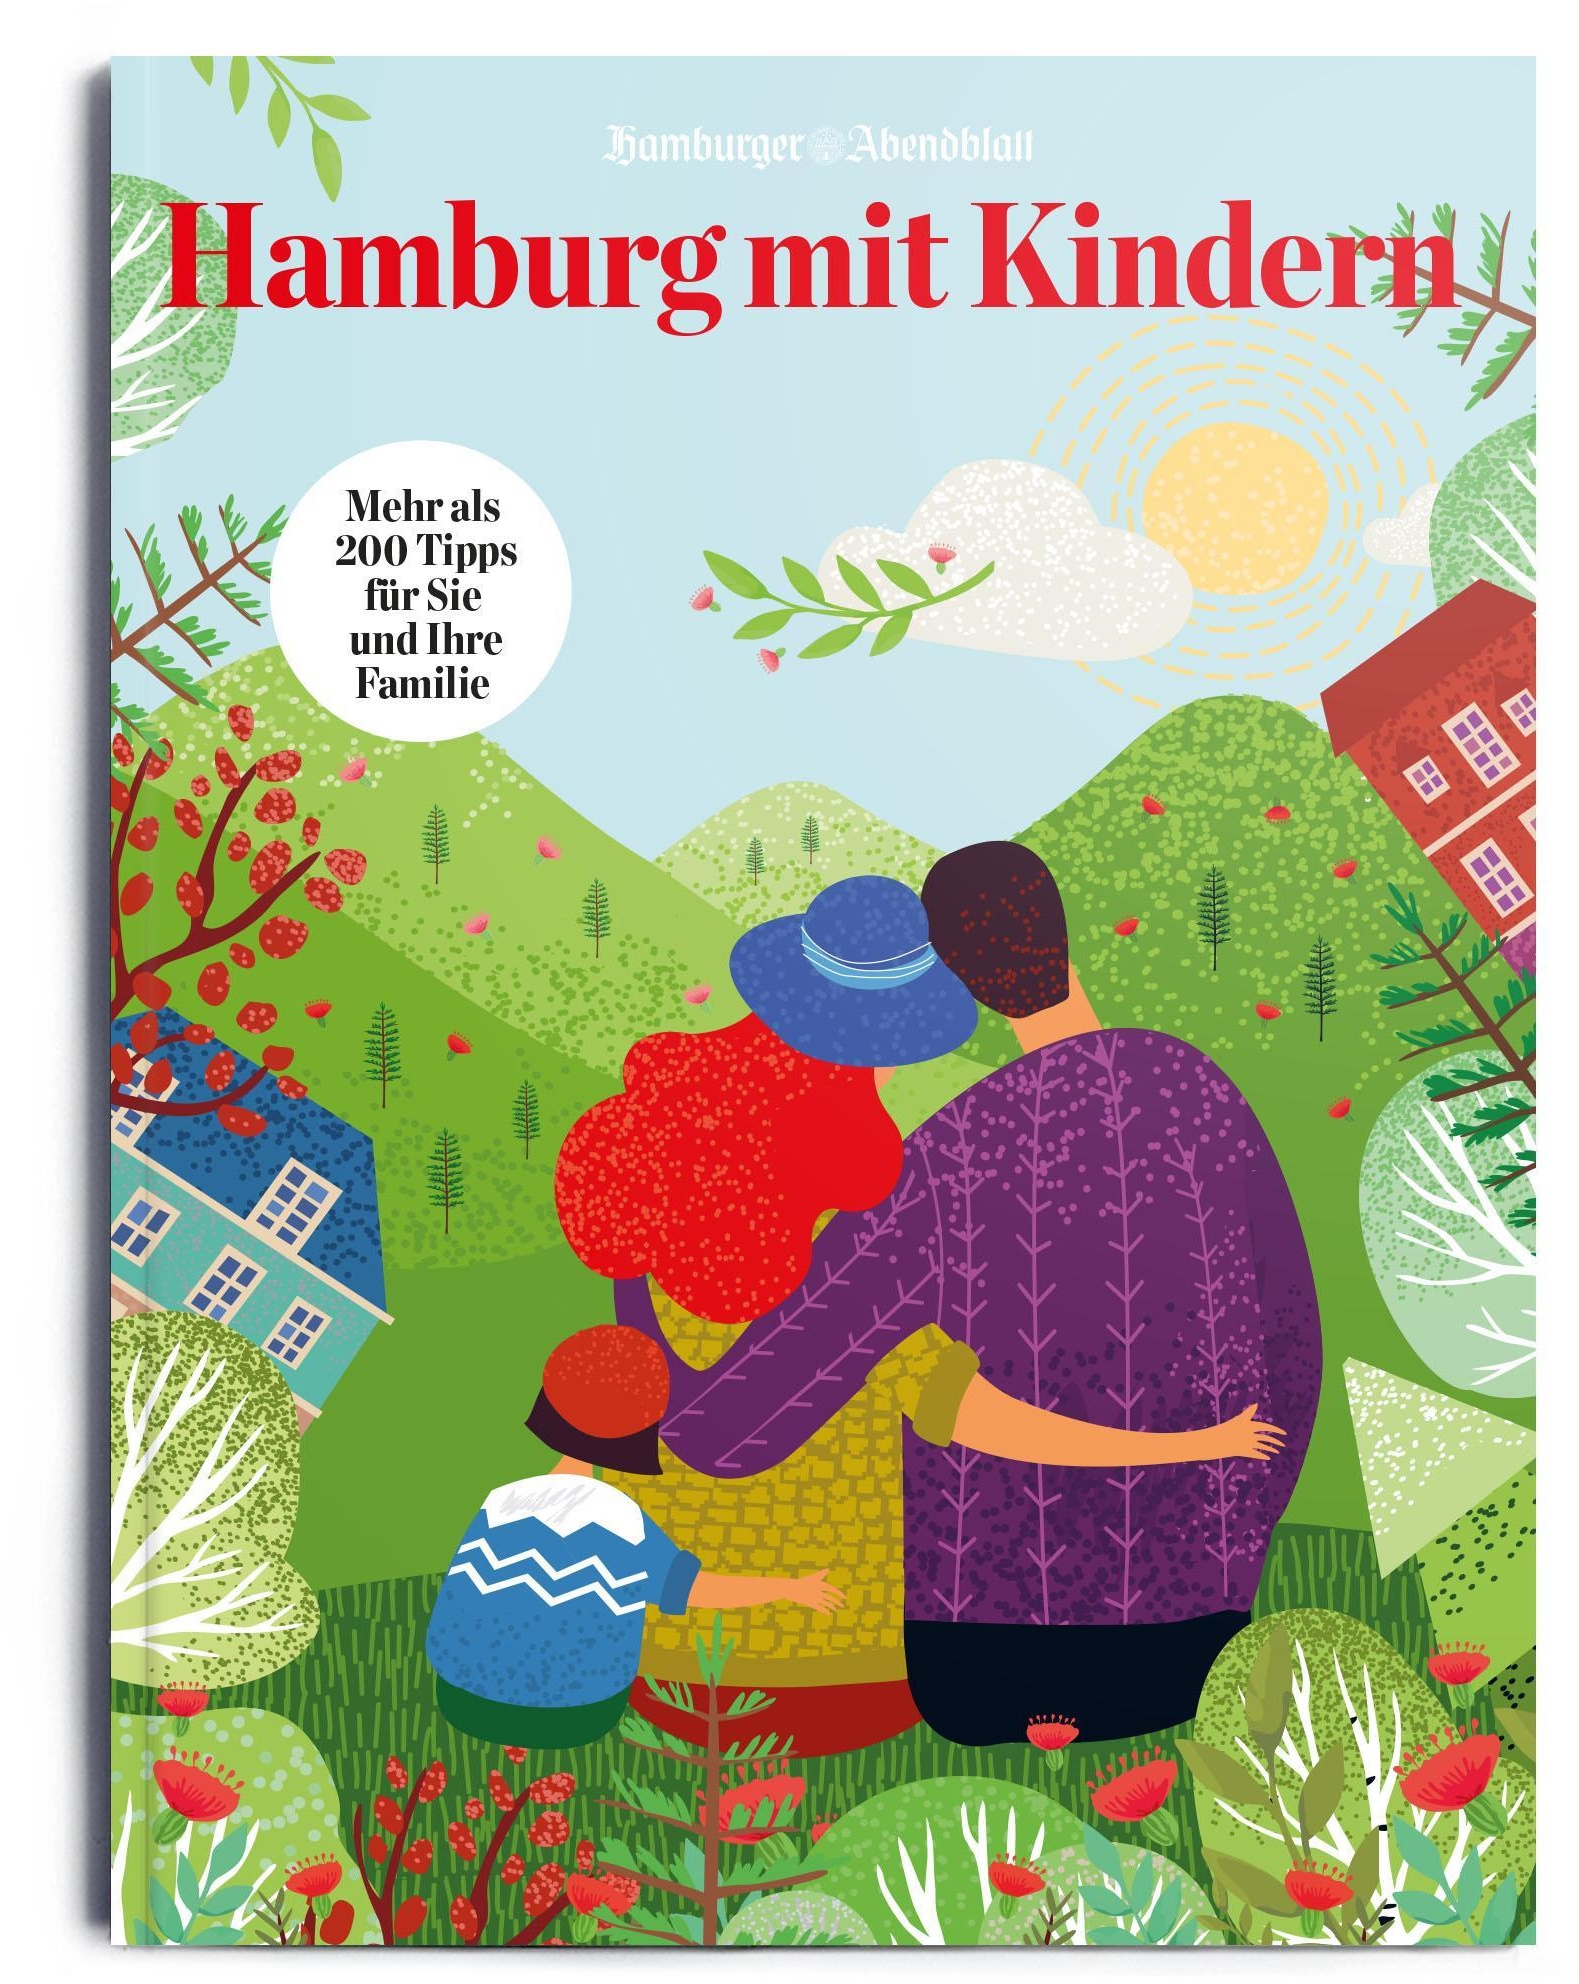 Hamburg Mit Kindern & Wir Kinder In Hamburg - Hamburger Abendblatt  Taschenbuch